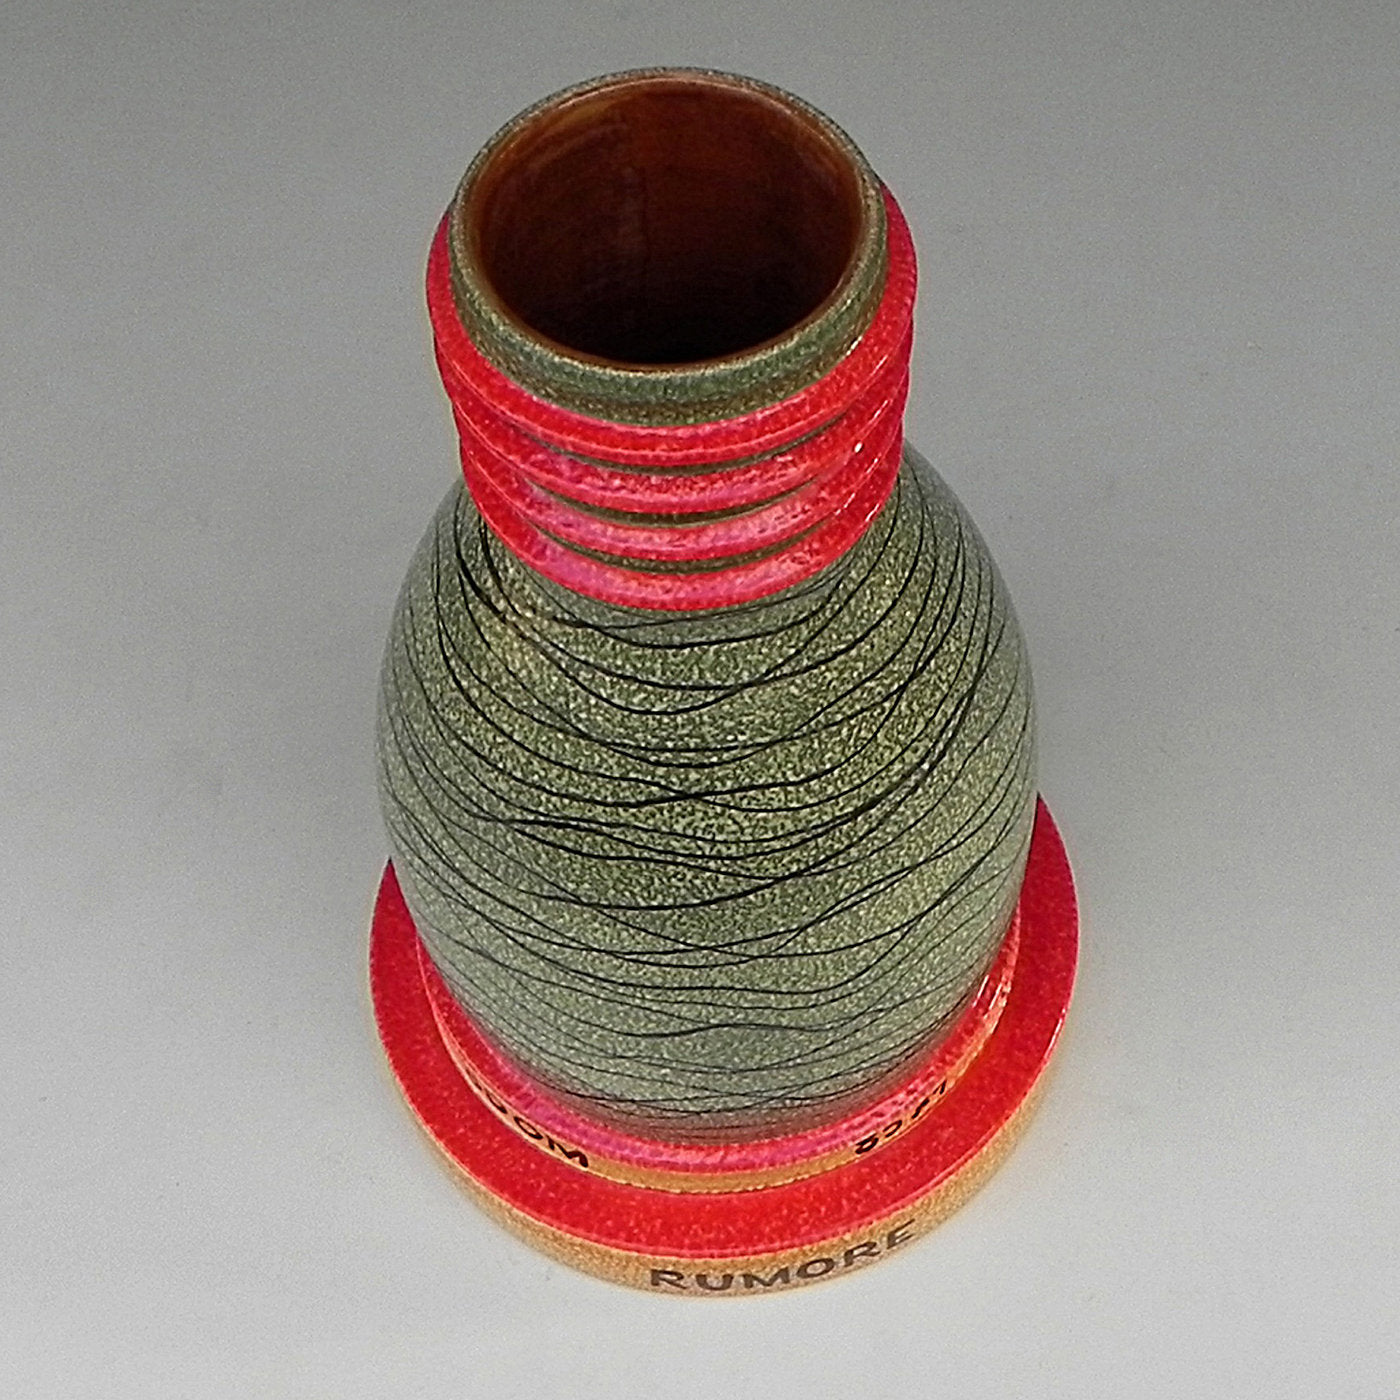 Inquinante Ceramic Vase - Alternative view 1